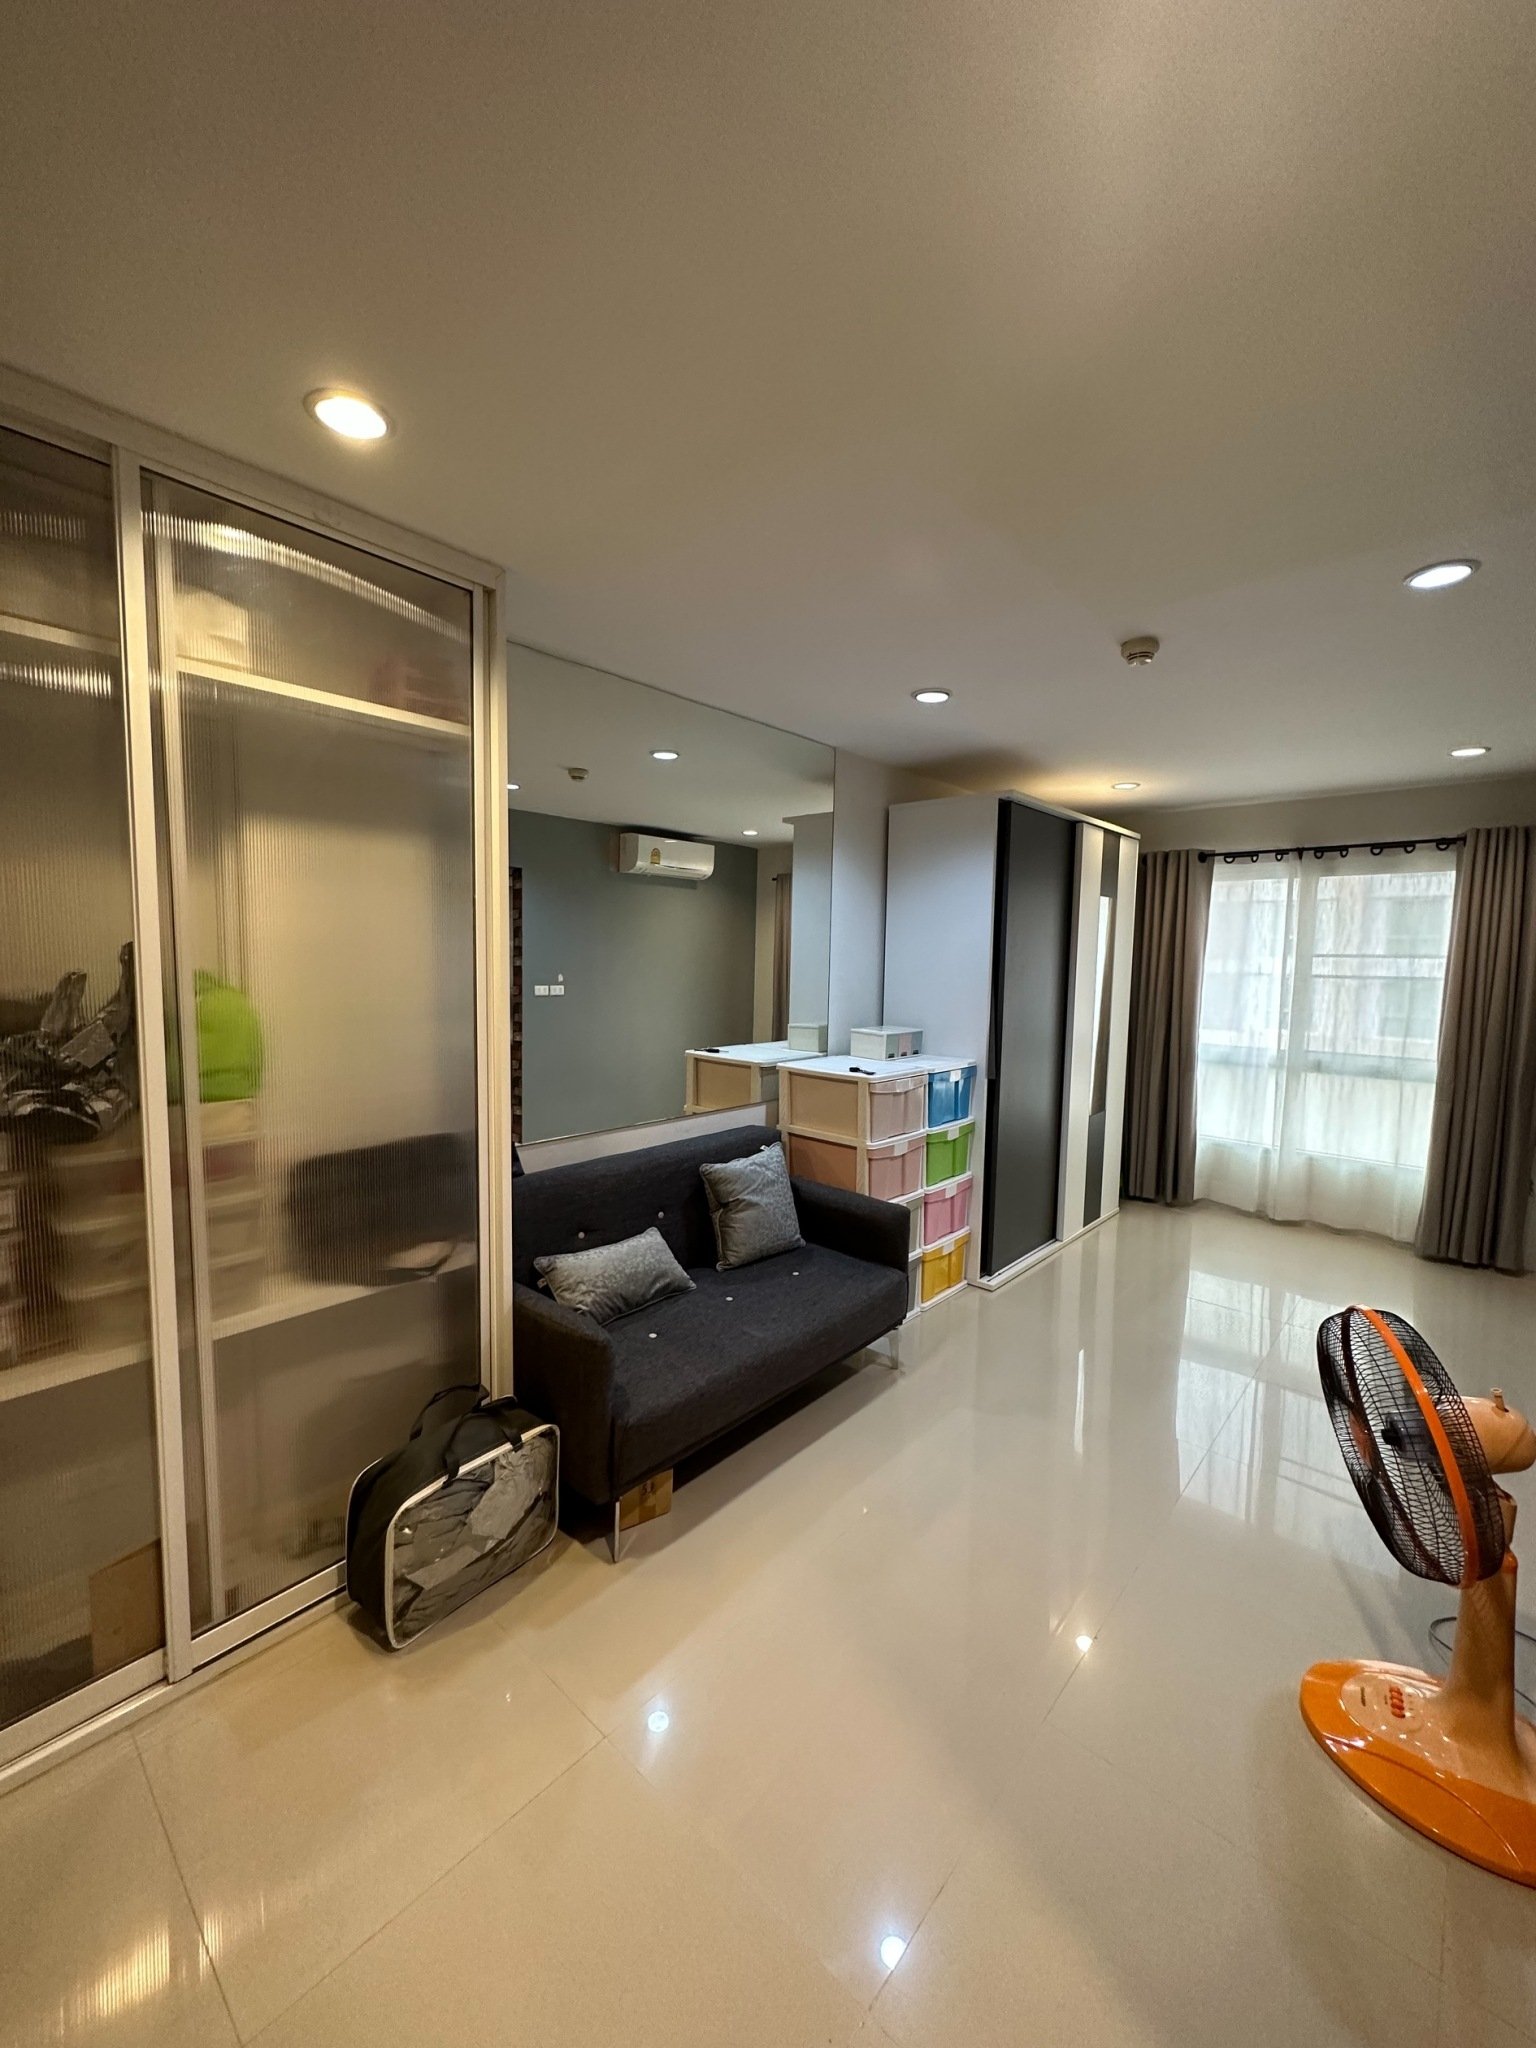 出售公寓The Niche Ladprao 48 Phase 2，面积 26  平方米， 1 床, 4楼， 装饰精美的房间，干净，视野好，准备入住，靠近MRT Sutthisan 和 BTS Phawana。